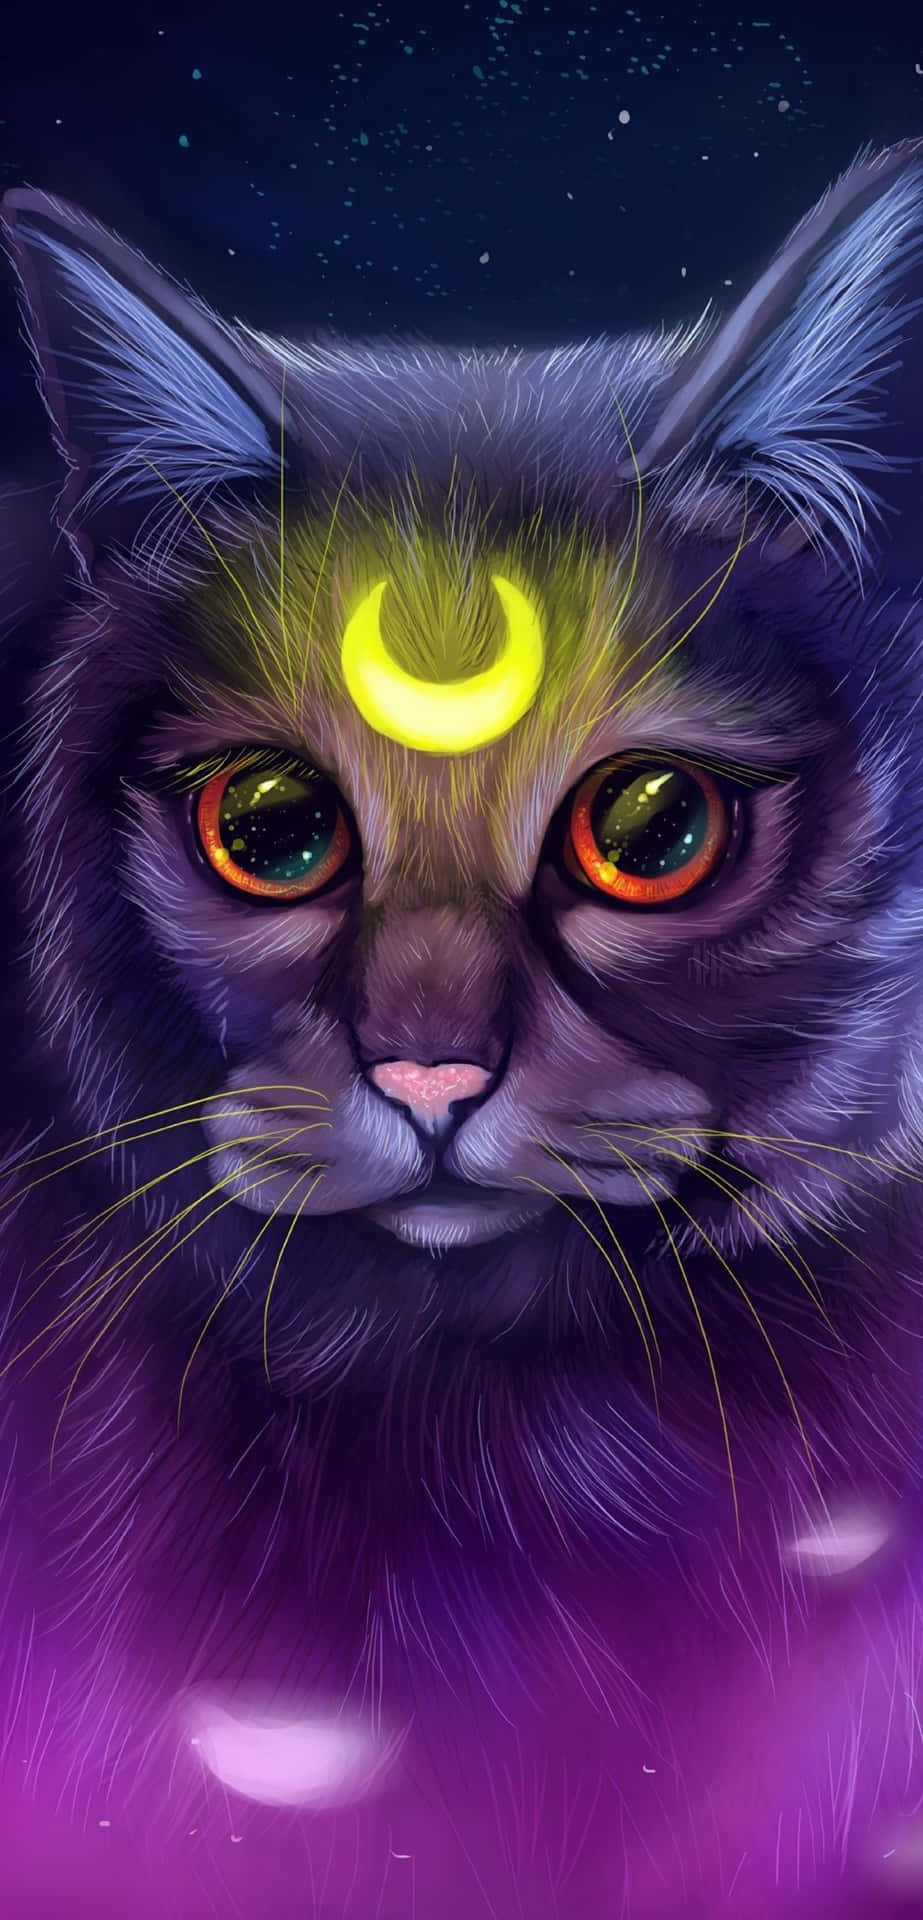 Udforsk natten himmel med den eventyrlystne Galaxy Cat Wallpaper! Wallpaper